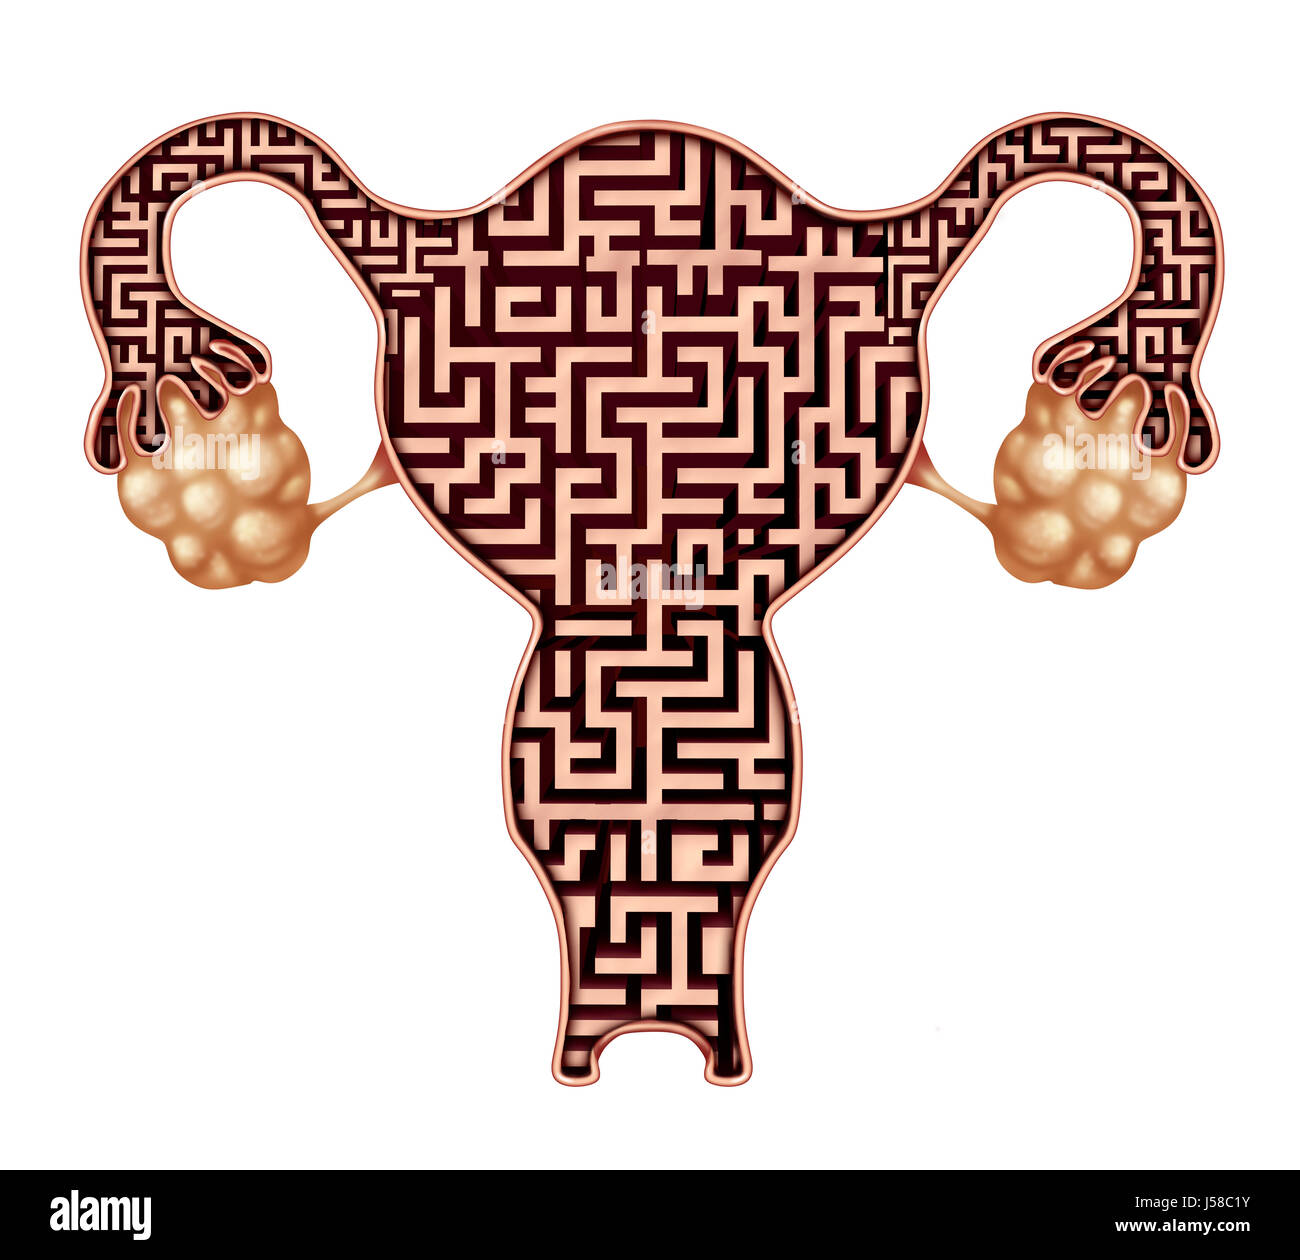 Fruchtbarkeit Problem und Unfruchtbarkeit Herausforderung medizinisches Konzept als eine menschliche Gebärmutter geformt wie ein Labyrinth aus Probleme haben, schwanger. Stockfoto